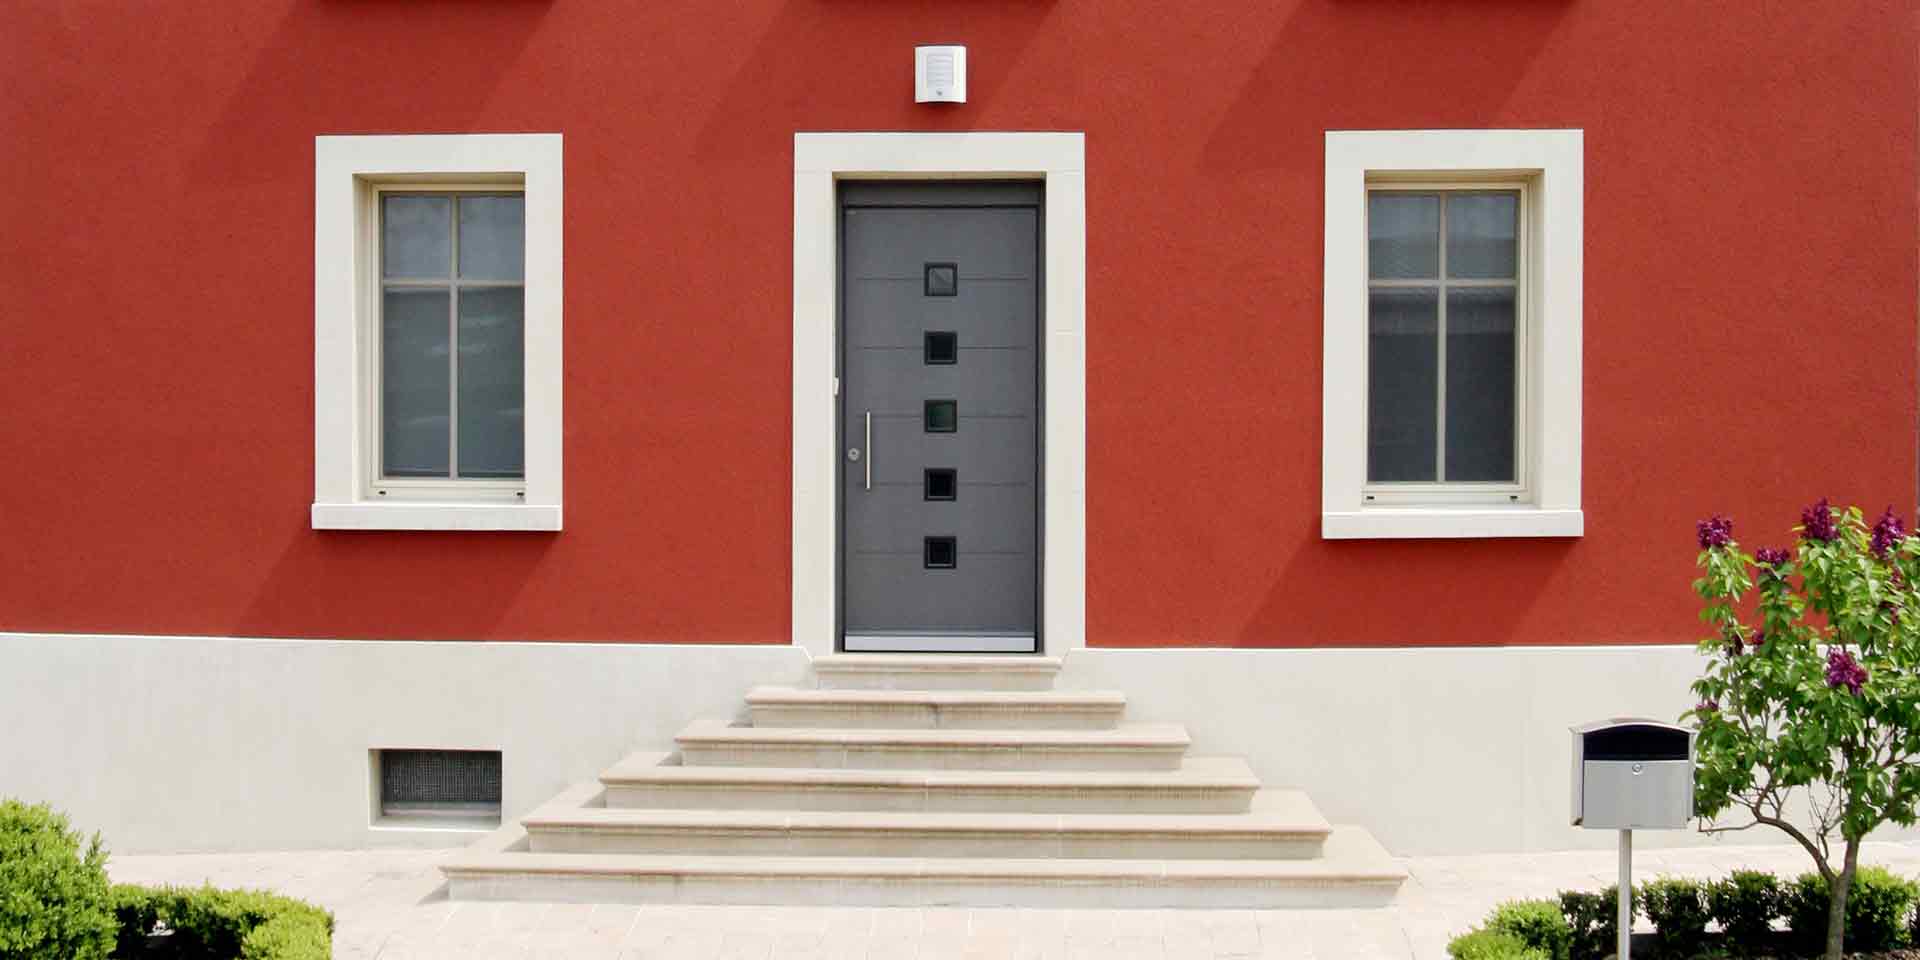 Nahaufnahme auf den Eingangbereichs des roten Einfamilienhauses mit Sicht auf die Coplaning Haustür und jeweils links und rechts davon weiße Coplaning Fenster.